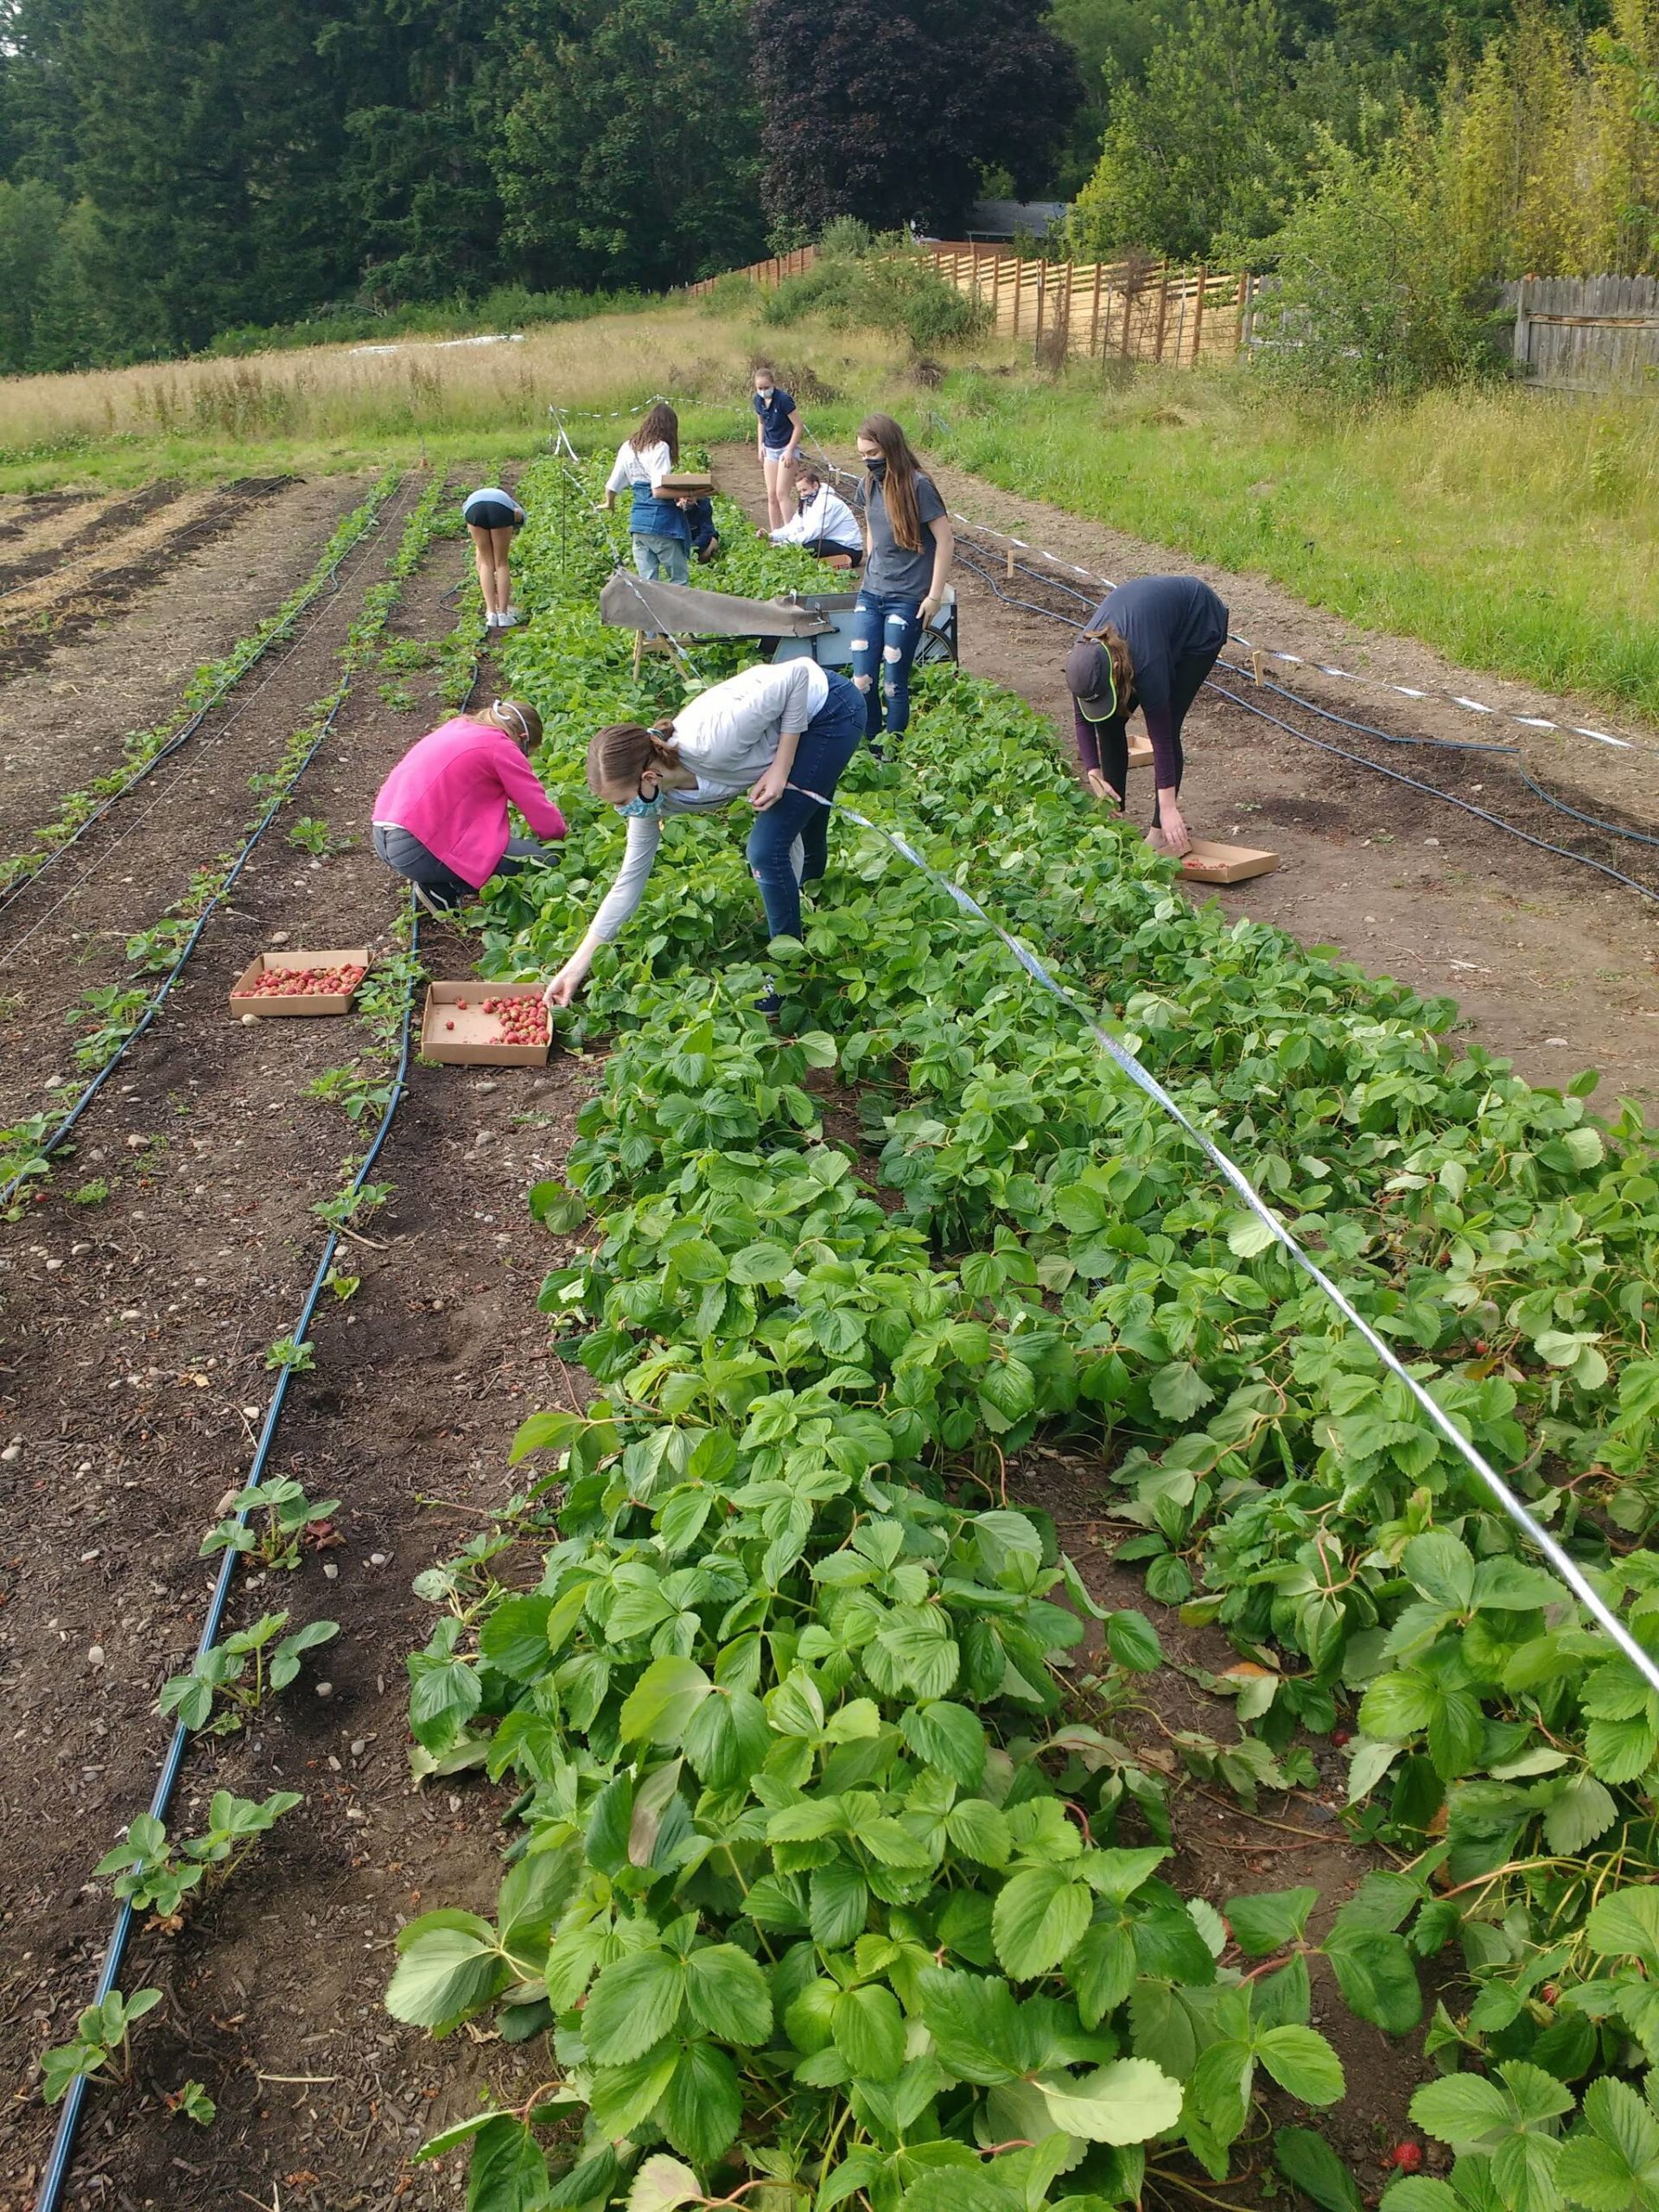 Volunteers picking strawberries.